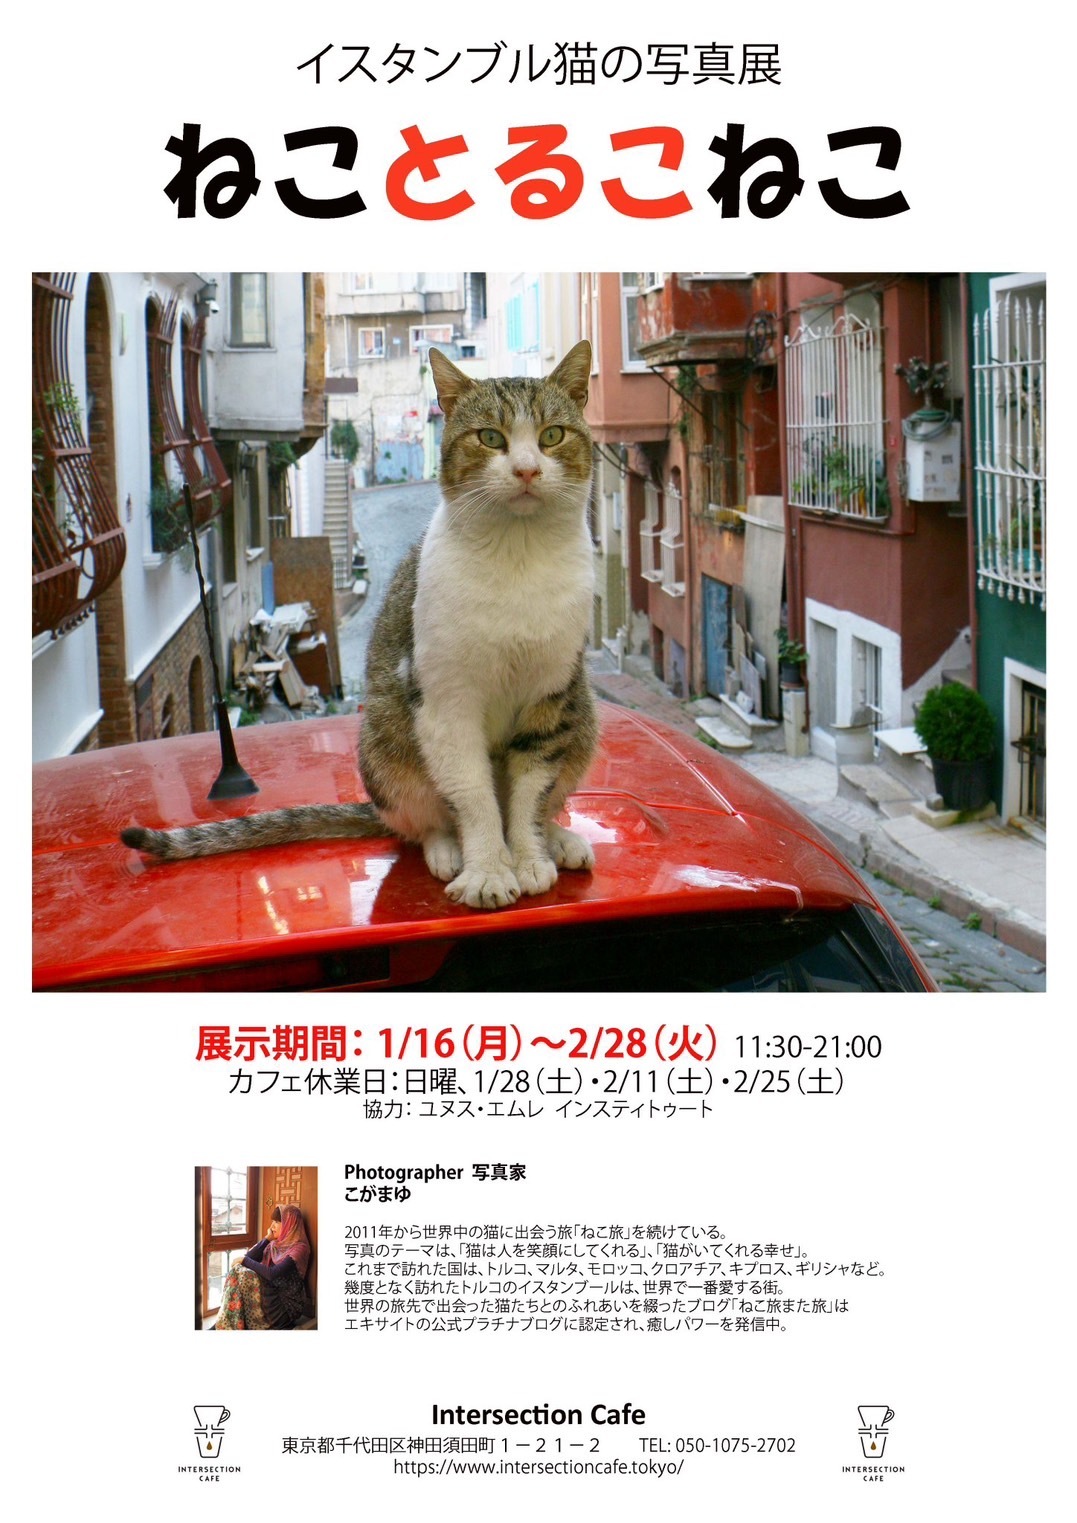 【好評につき3/4（土）まで延長となりました！】1/16～2/28東京都千代田区神田にあるIntersection Cafeさんで、トルコの猫の写真展を開催します！_e0255060_20443129.jpg